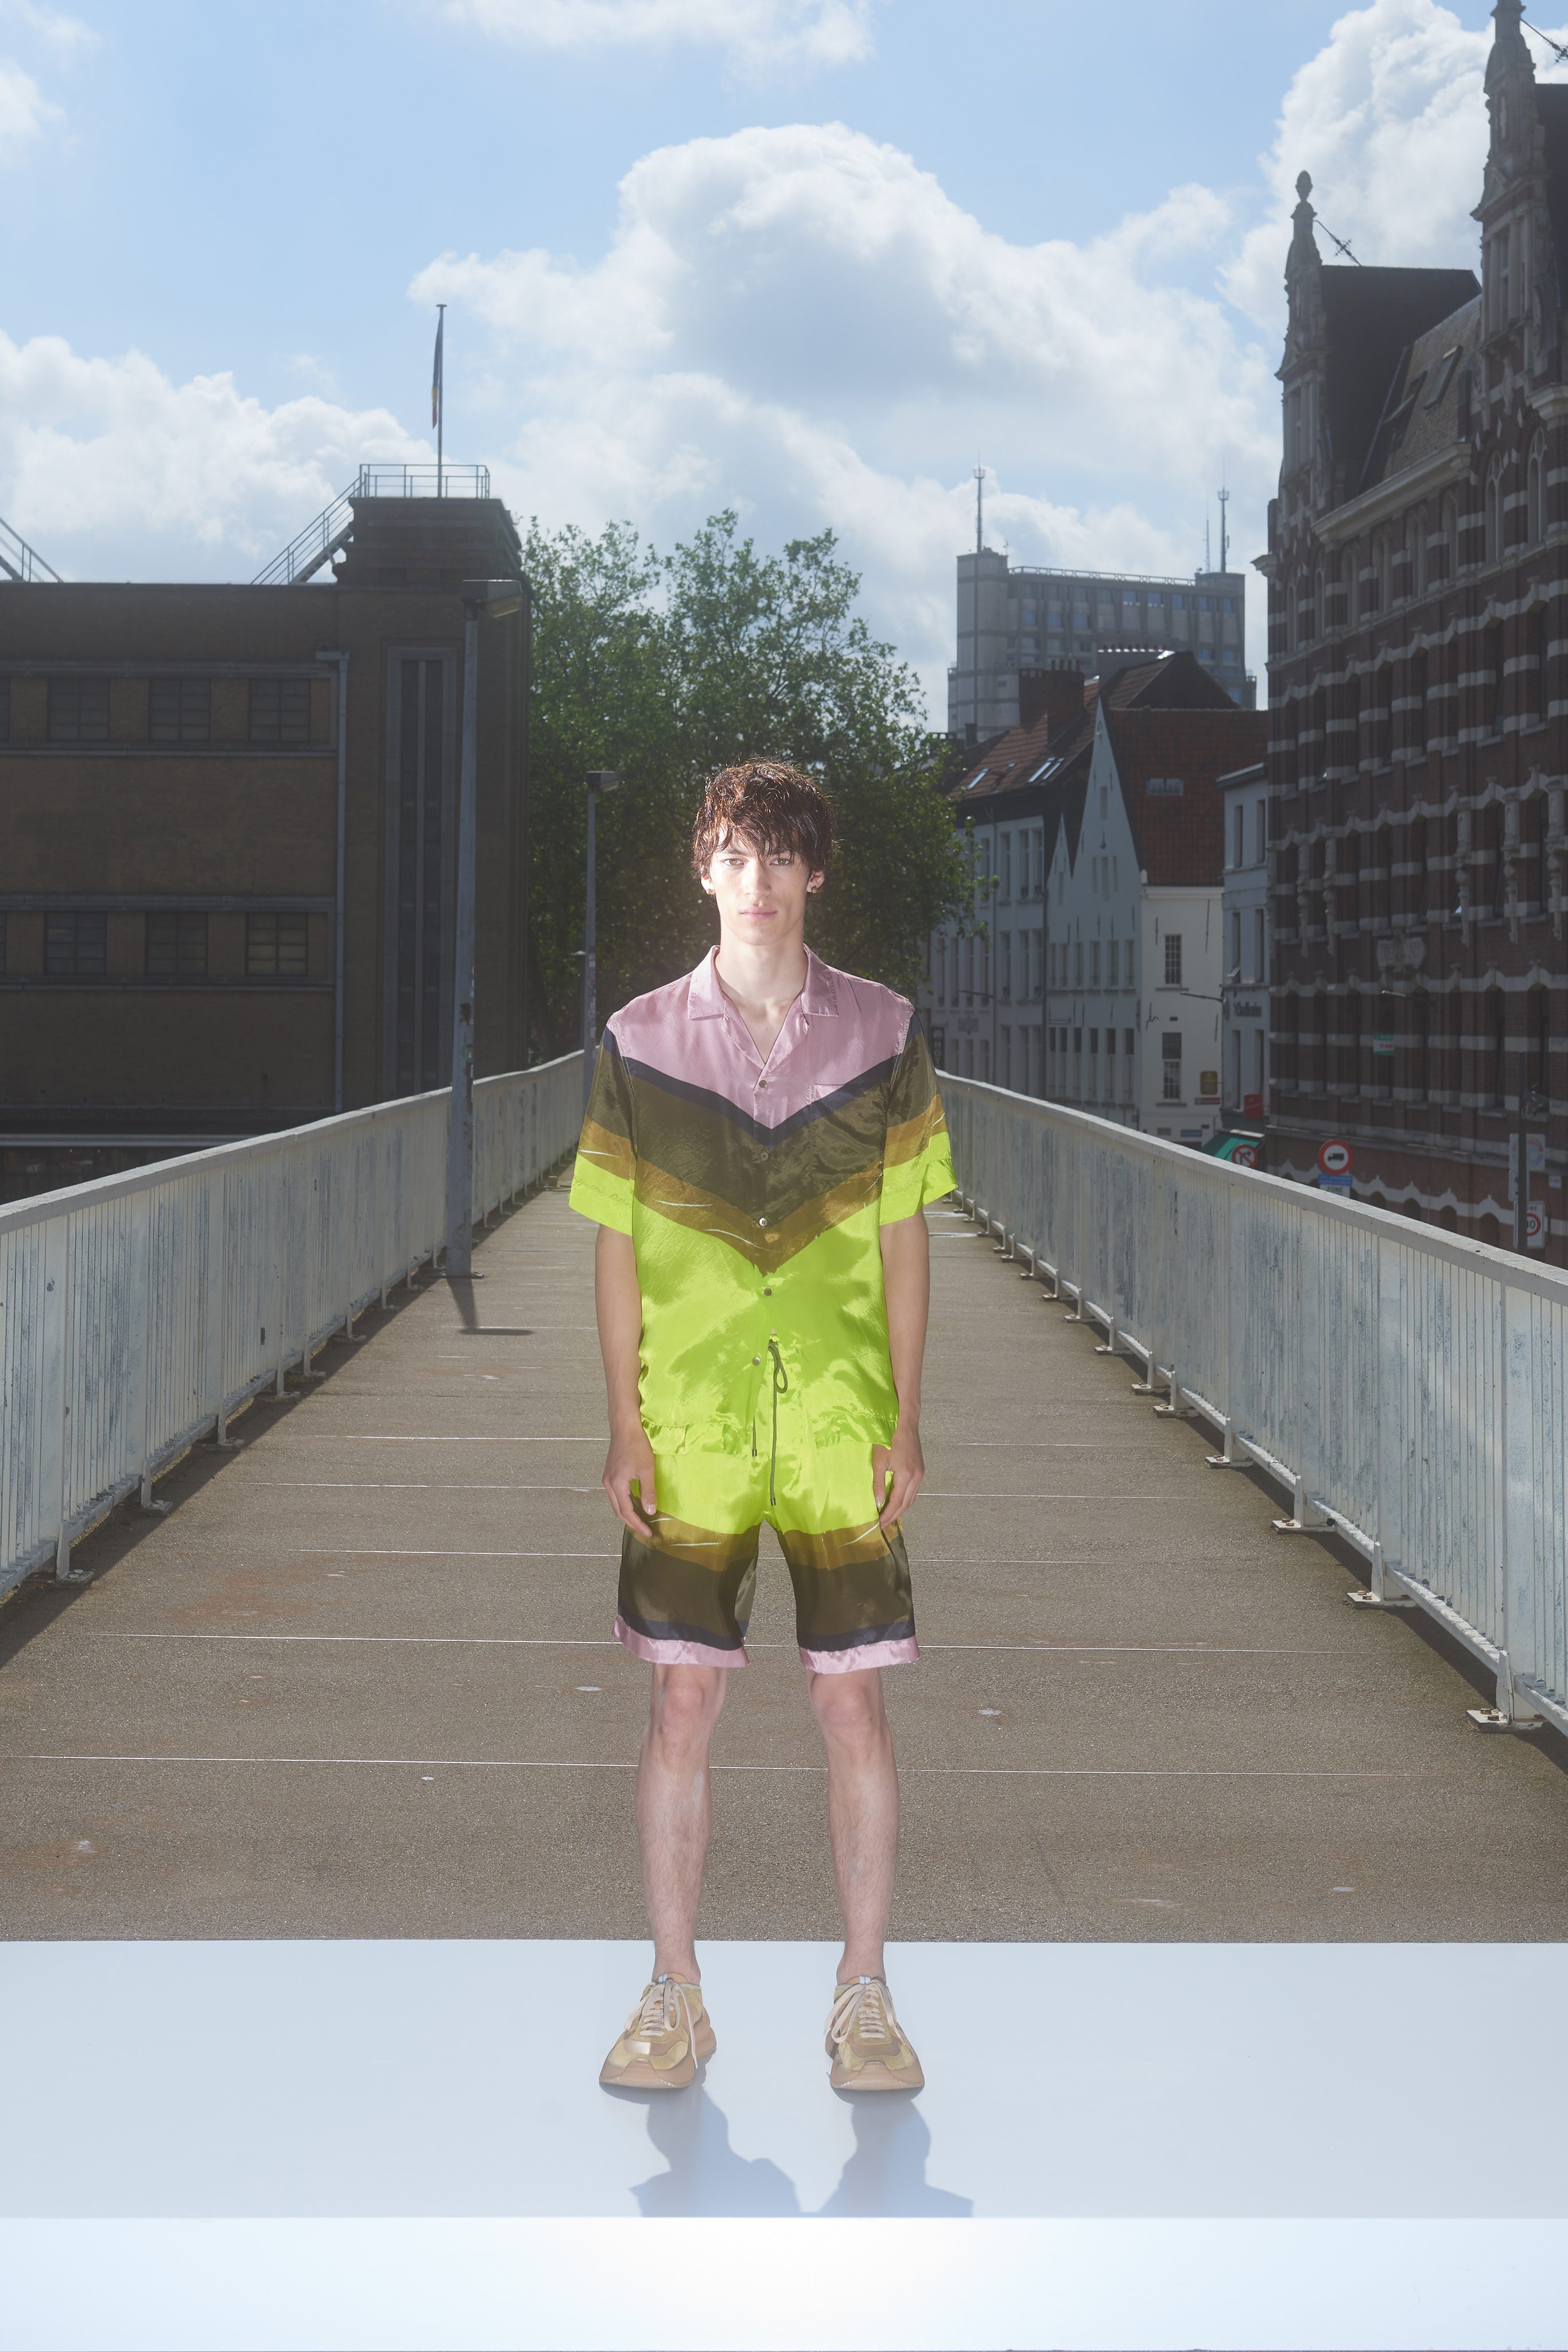 Dries Van Noten rend hommage à la ville d’Anvers dans sa collection homme printemps-été 2022